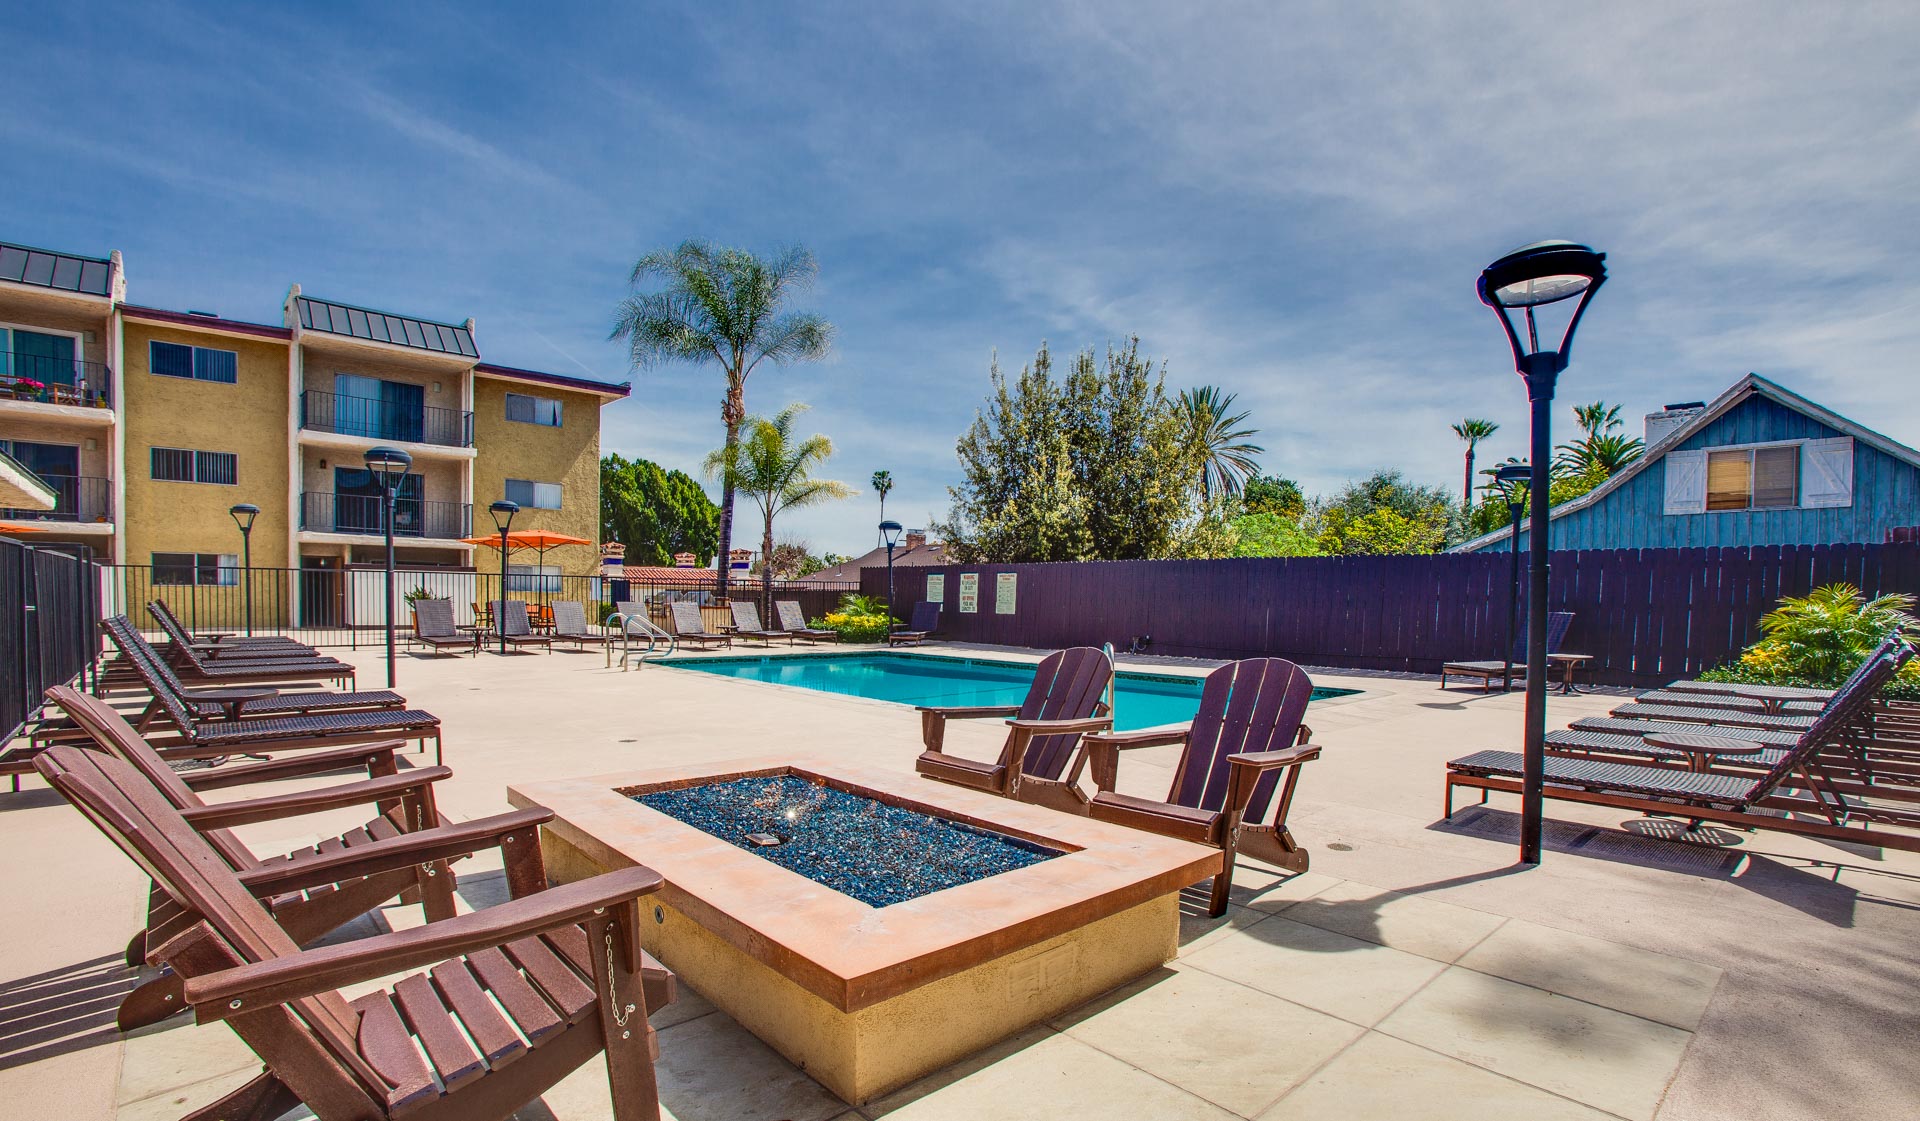 Villas of Pasadena Apartment Homes - Pasadena, CA - Swimming Pool